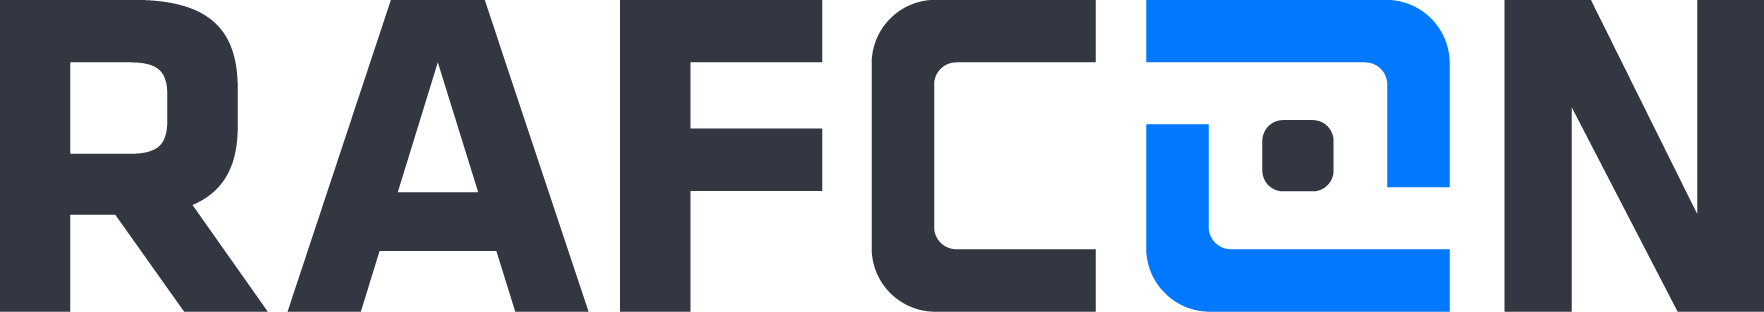 Official RAFCON logo